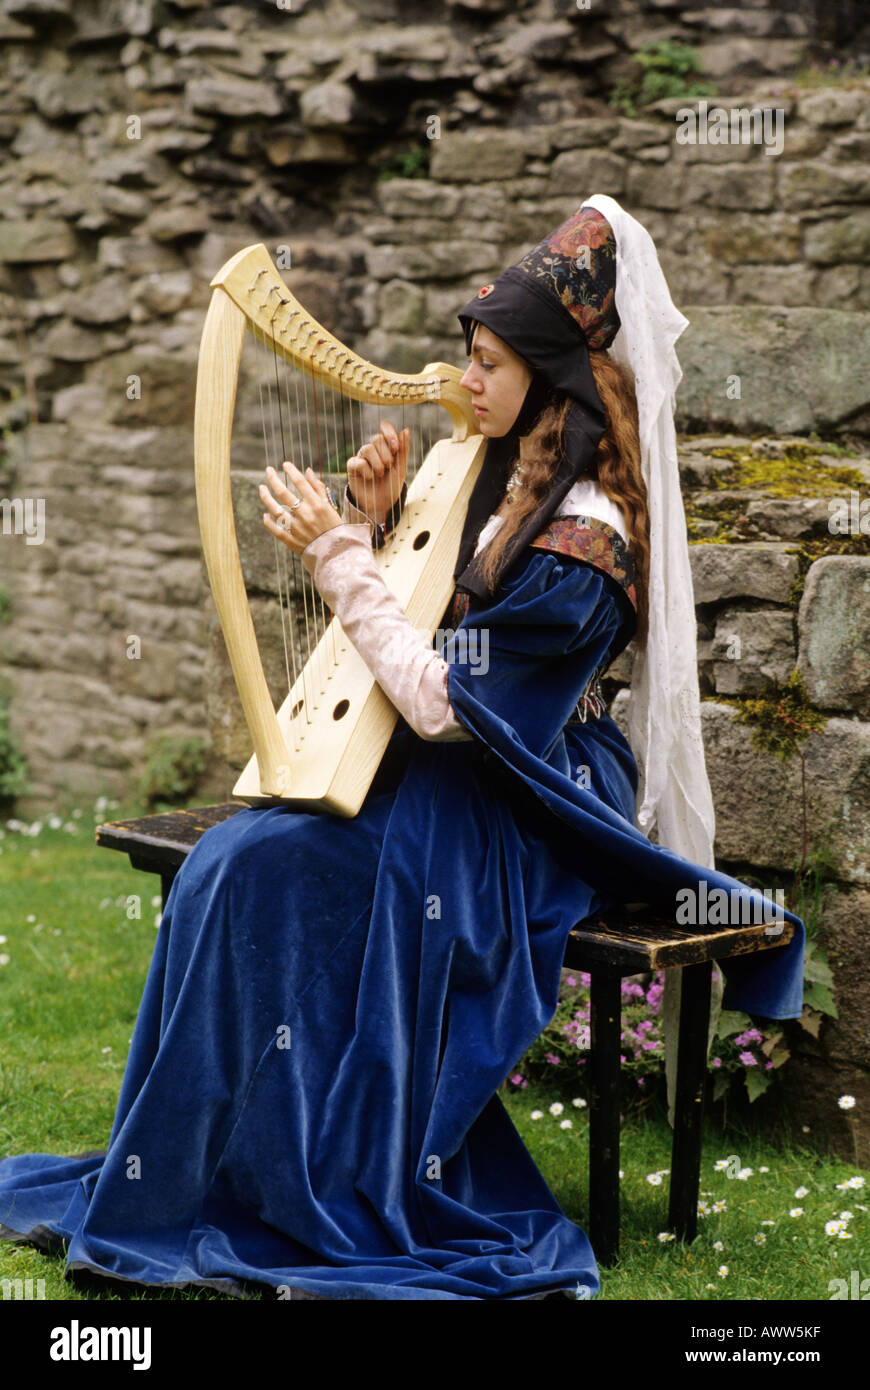 La reconstitution médiévale adoption 15ème siècle clavecin aristocratique costume jeune dame jouer instruments musique Banque D'Images